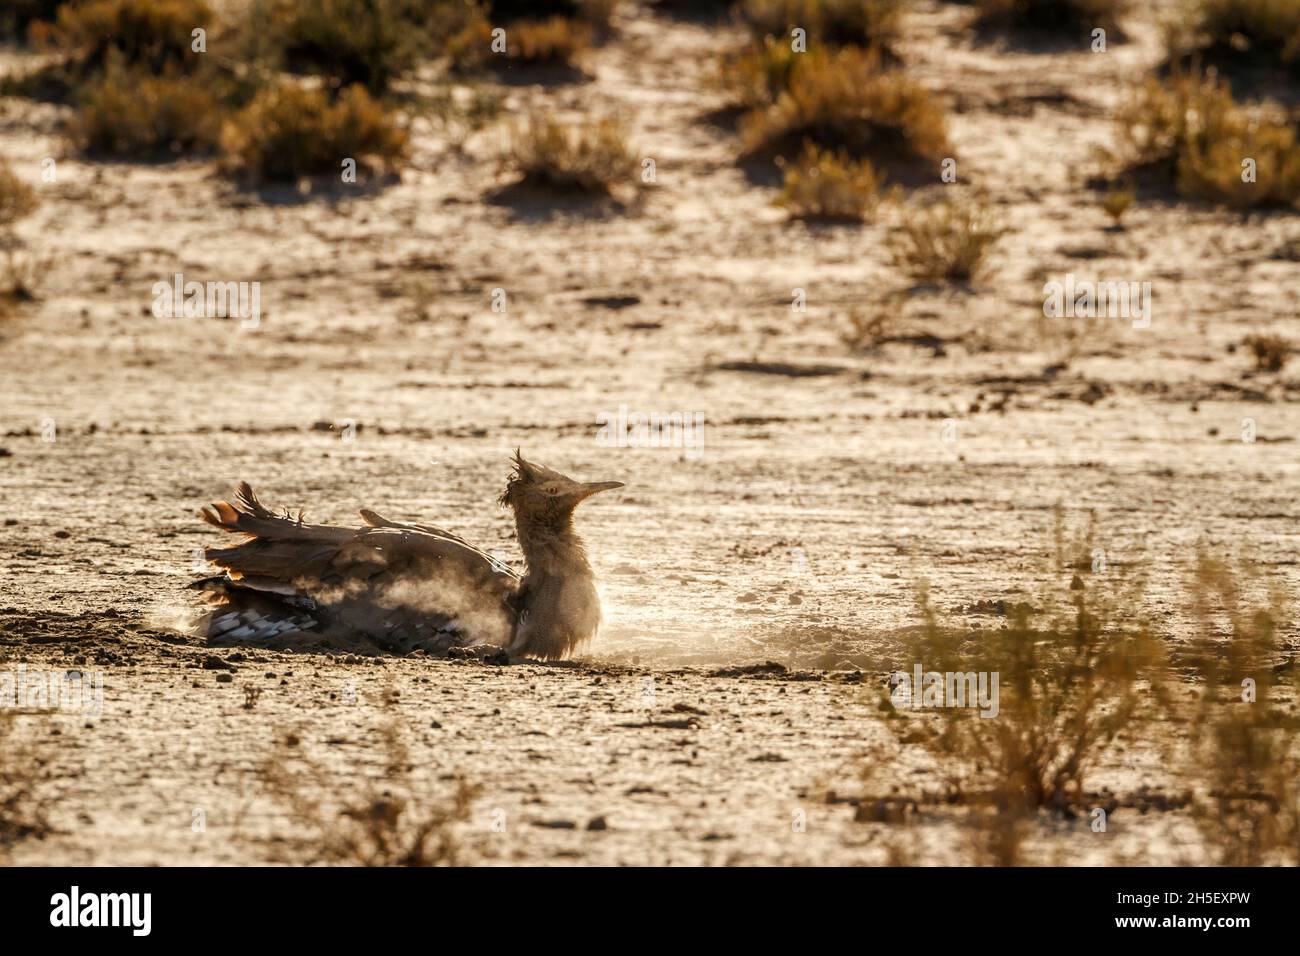 Kori bustard grooming in polvere di sabbia nel parco di Kgalagadi transfrontier, Sudafrica; la famiglia di specie Ardeotis kori di Otididae Foto Stock